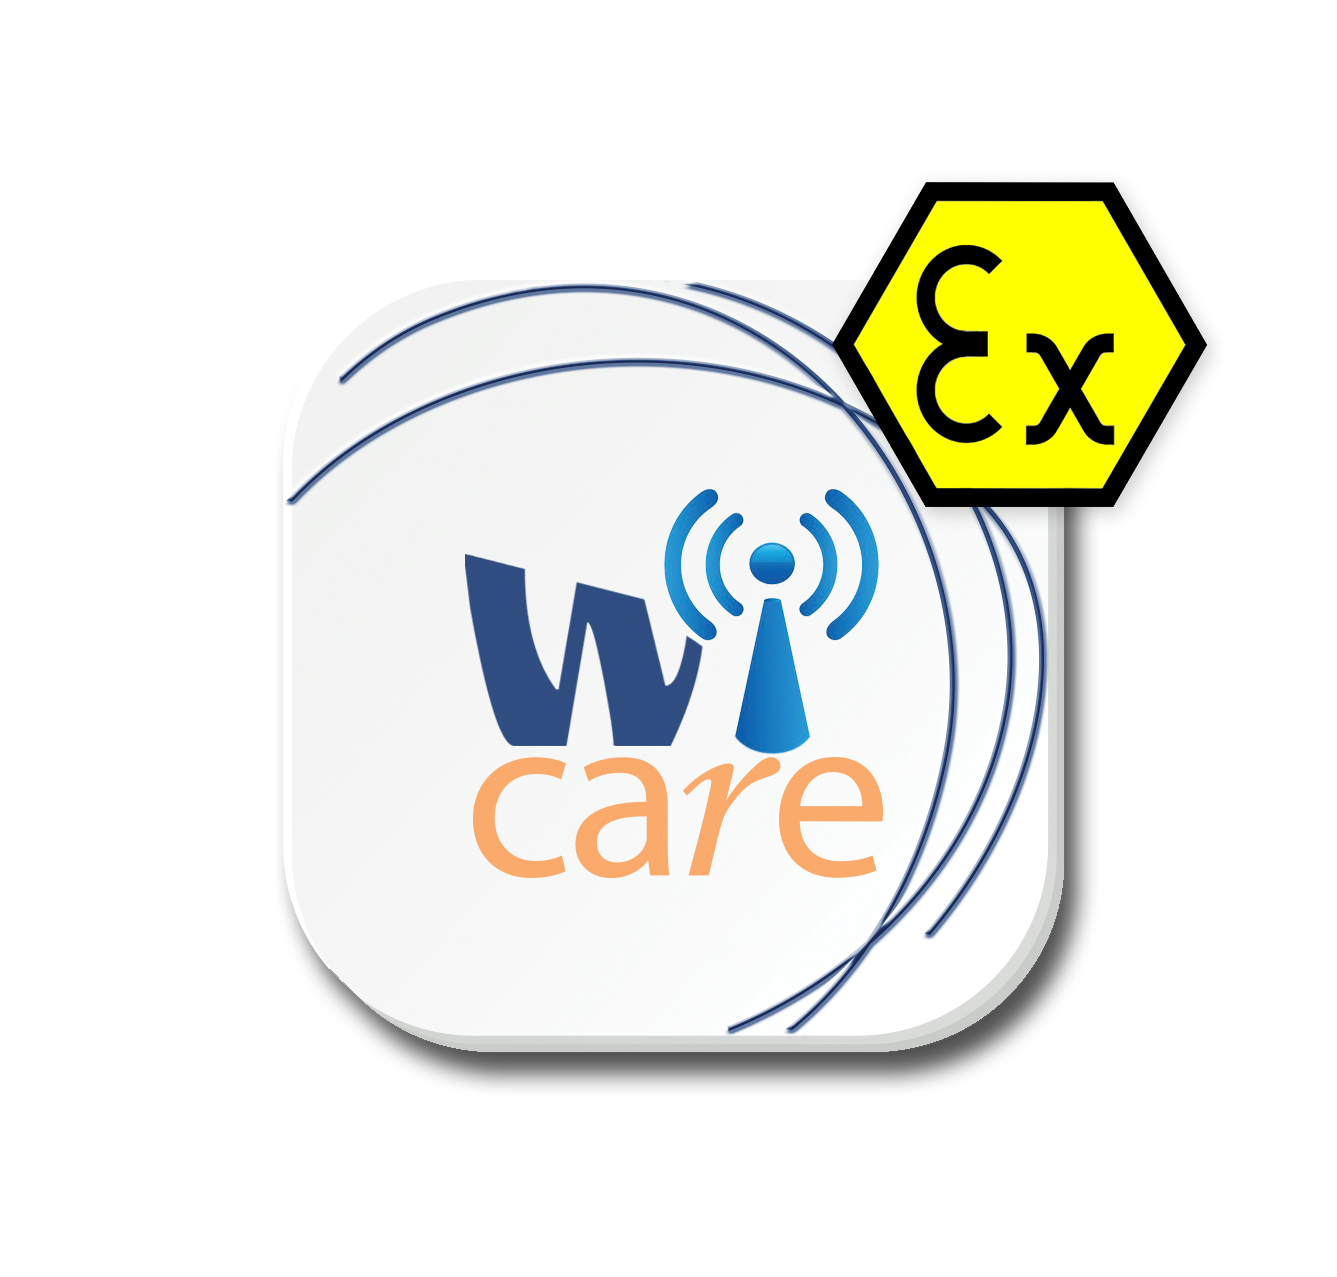 Wi-care_logoAtex-2